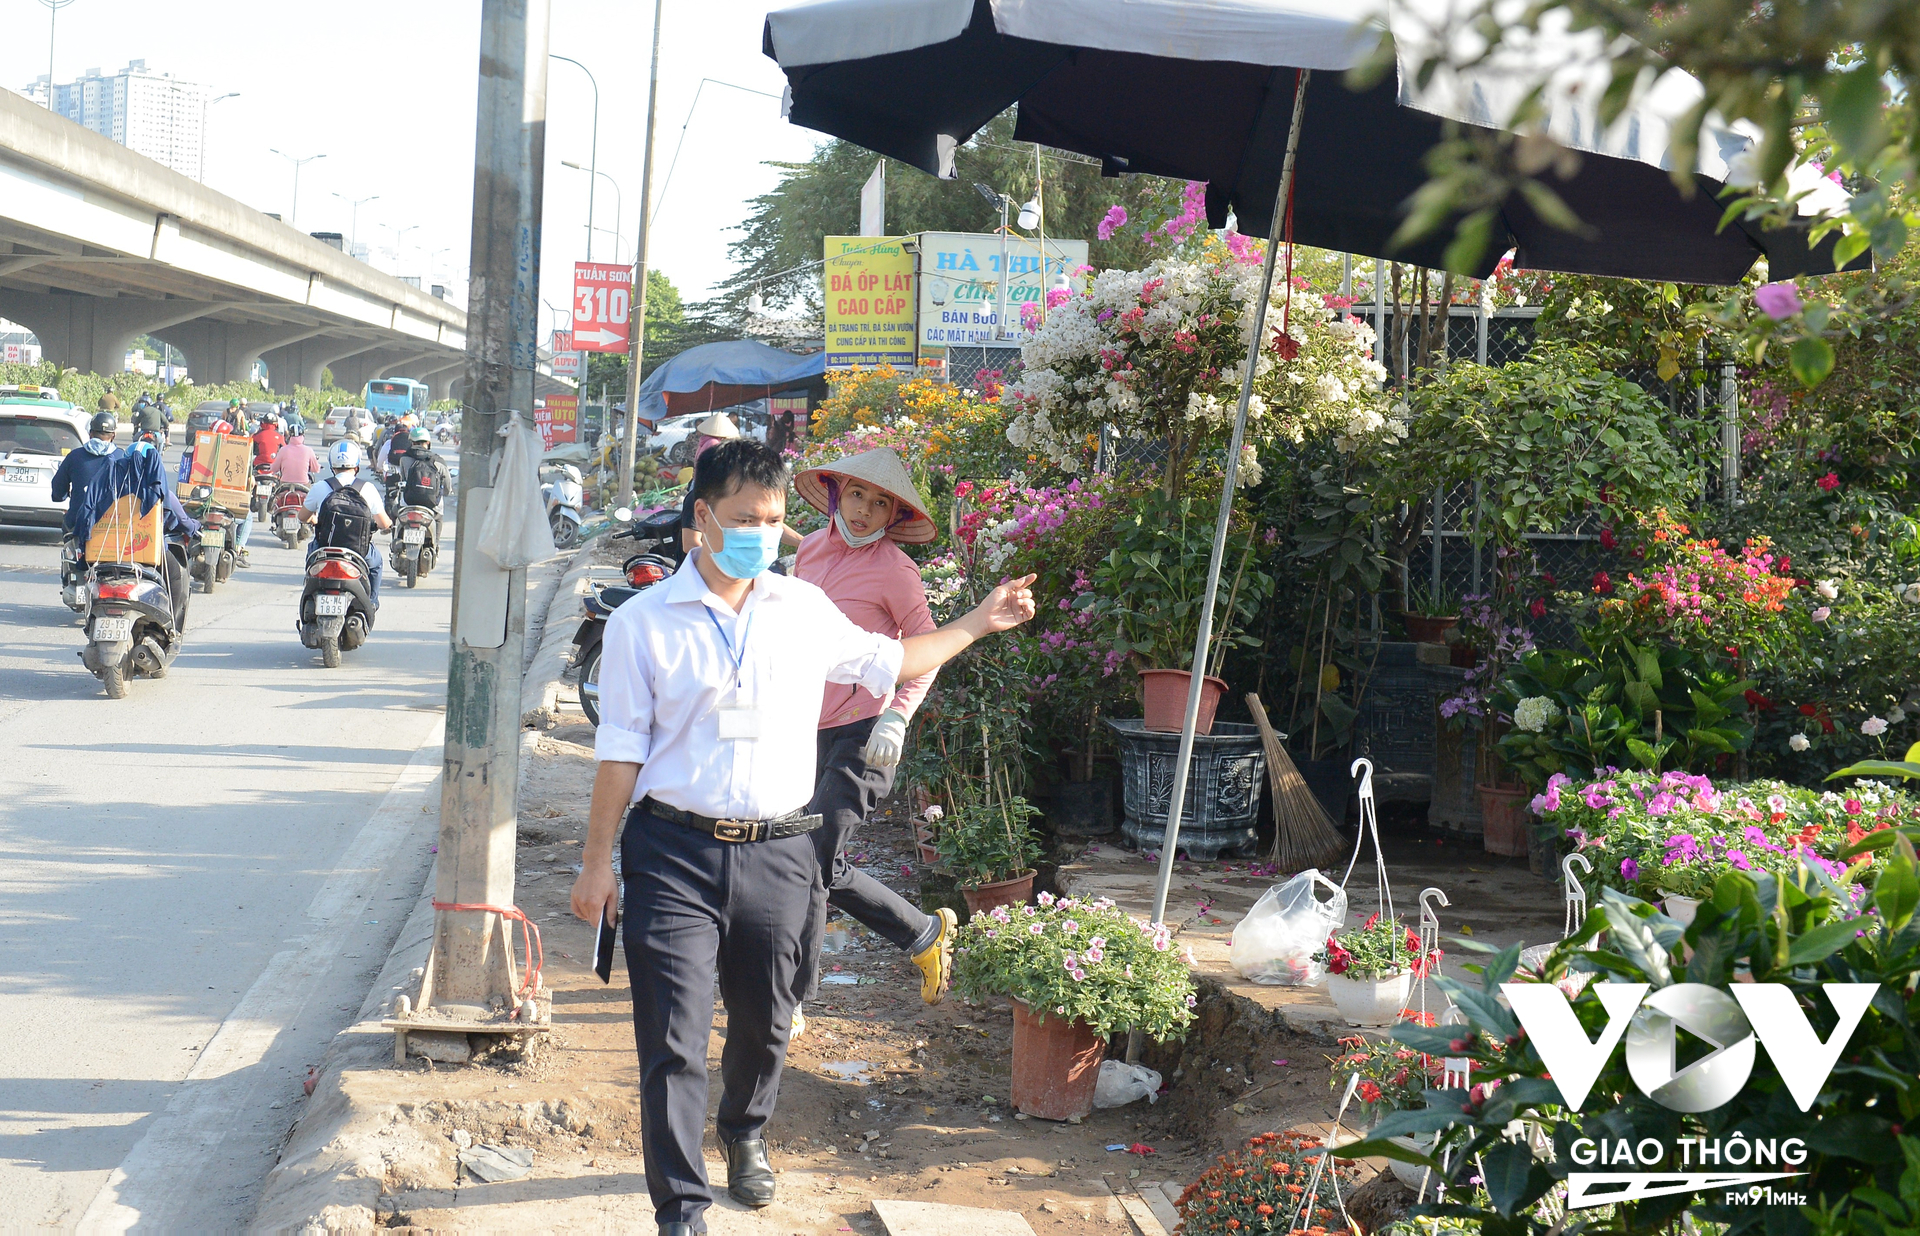 Khi thấy cán bộ của phường Đại Kim các hộ kinh doanh vội vàng tháo ô che nắng, di chuyển hàng hóa vào trong.